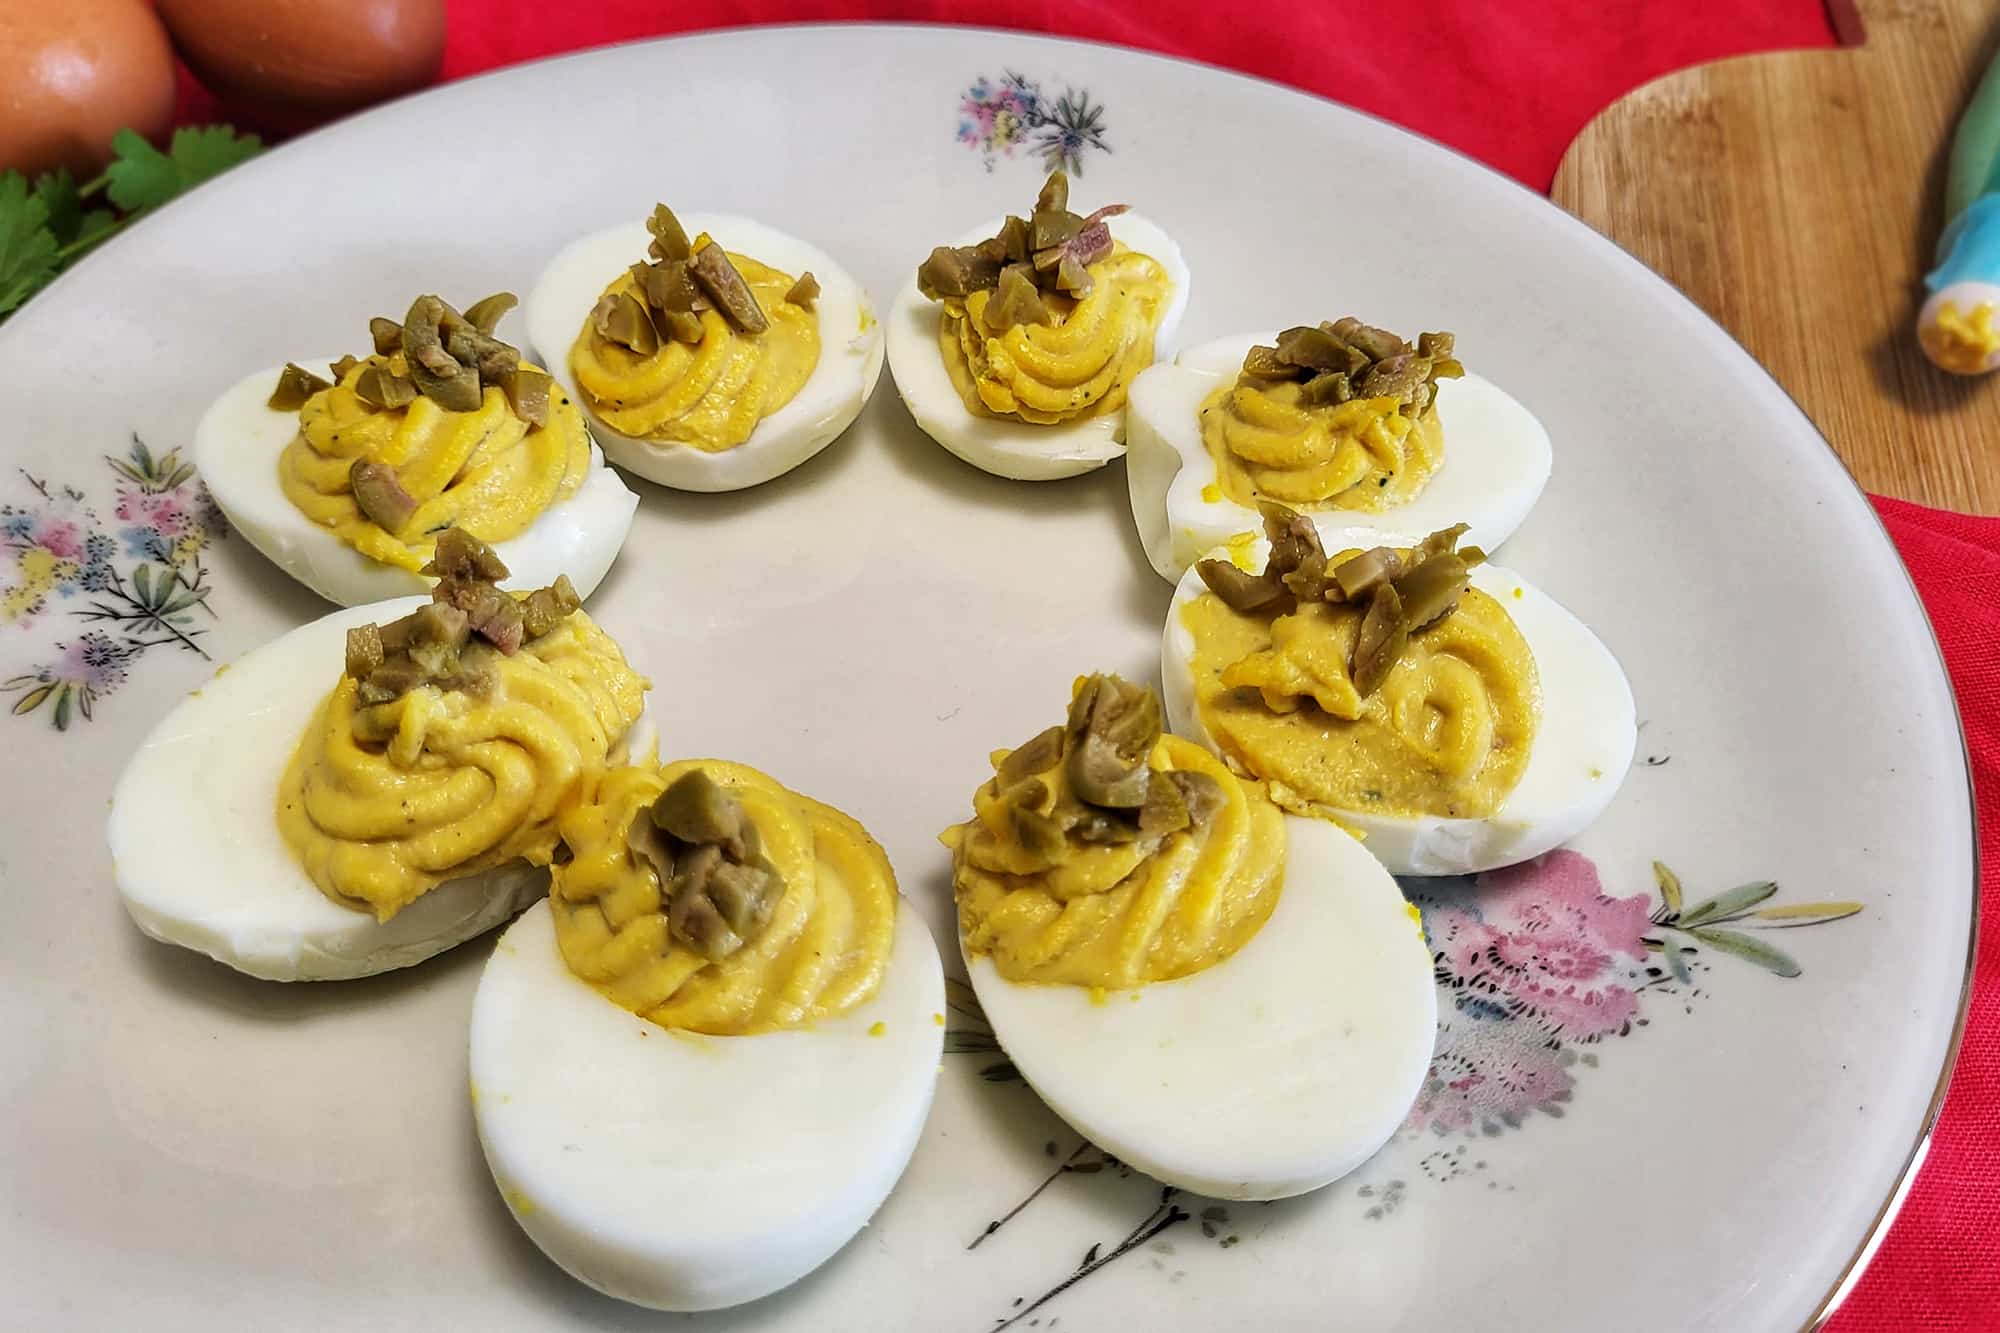 uova sode con ripieno di maionese, tonno e tuorli, condite con olive verdi, su un piatto bianco